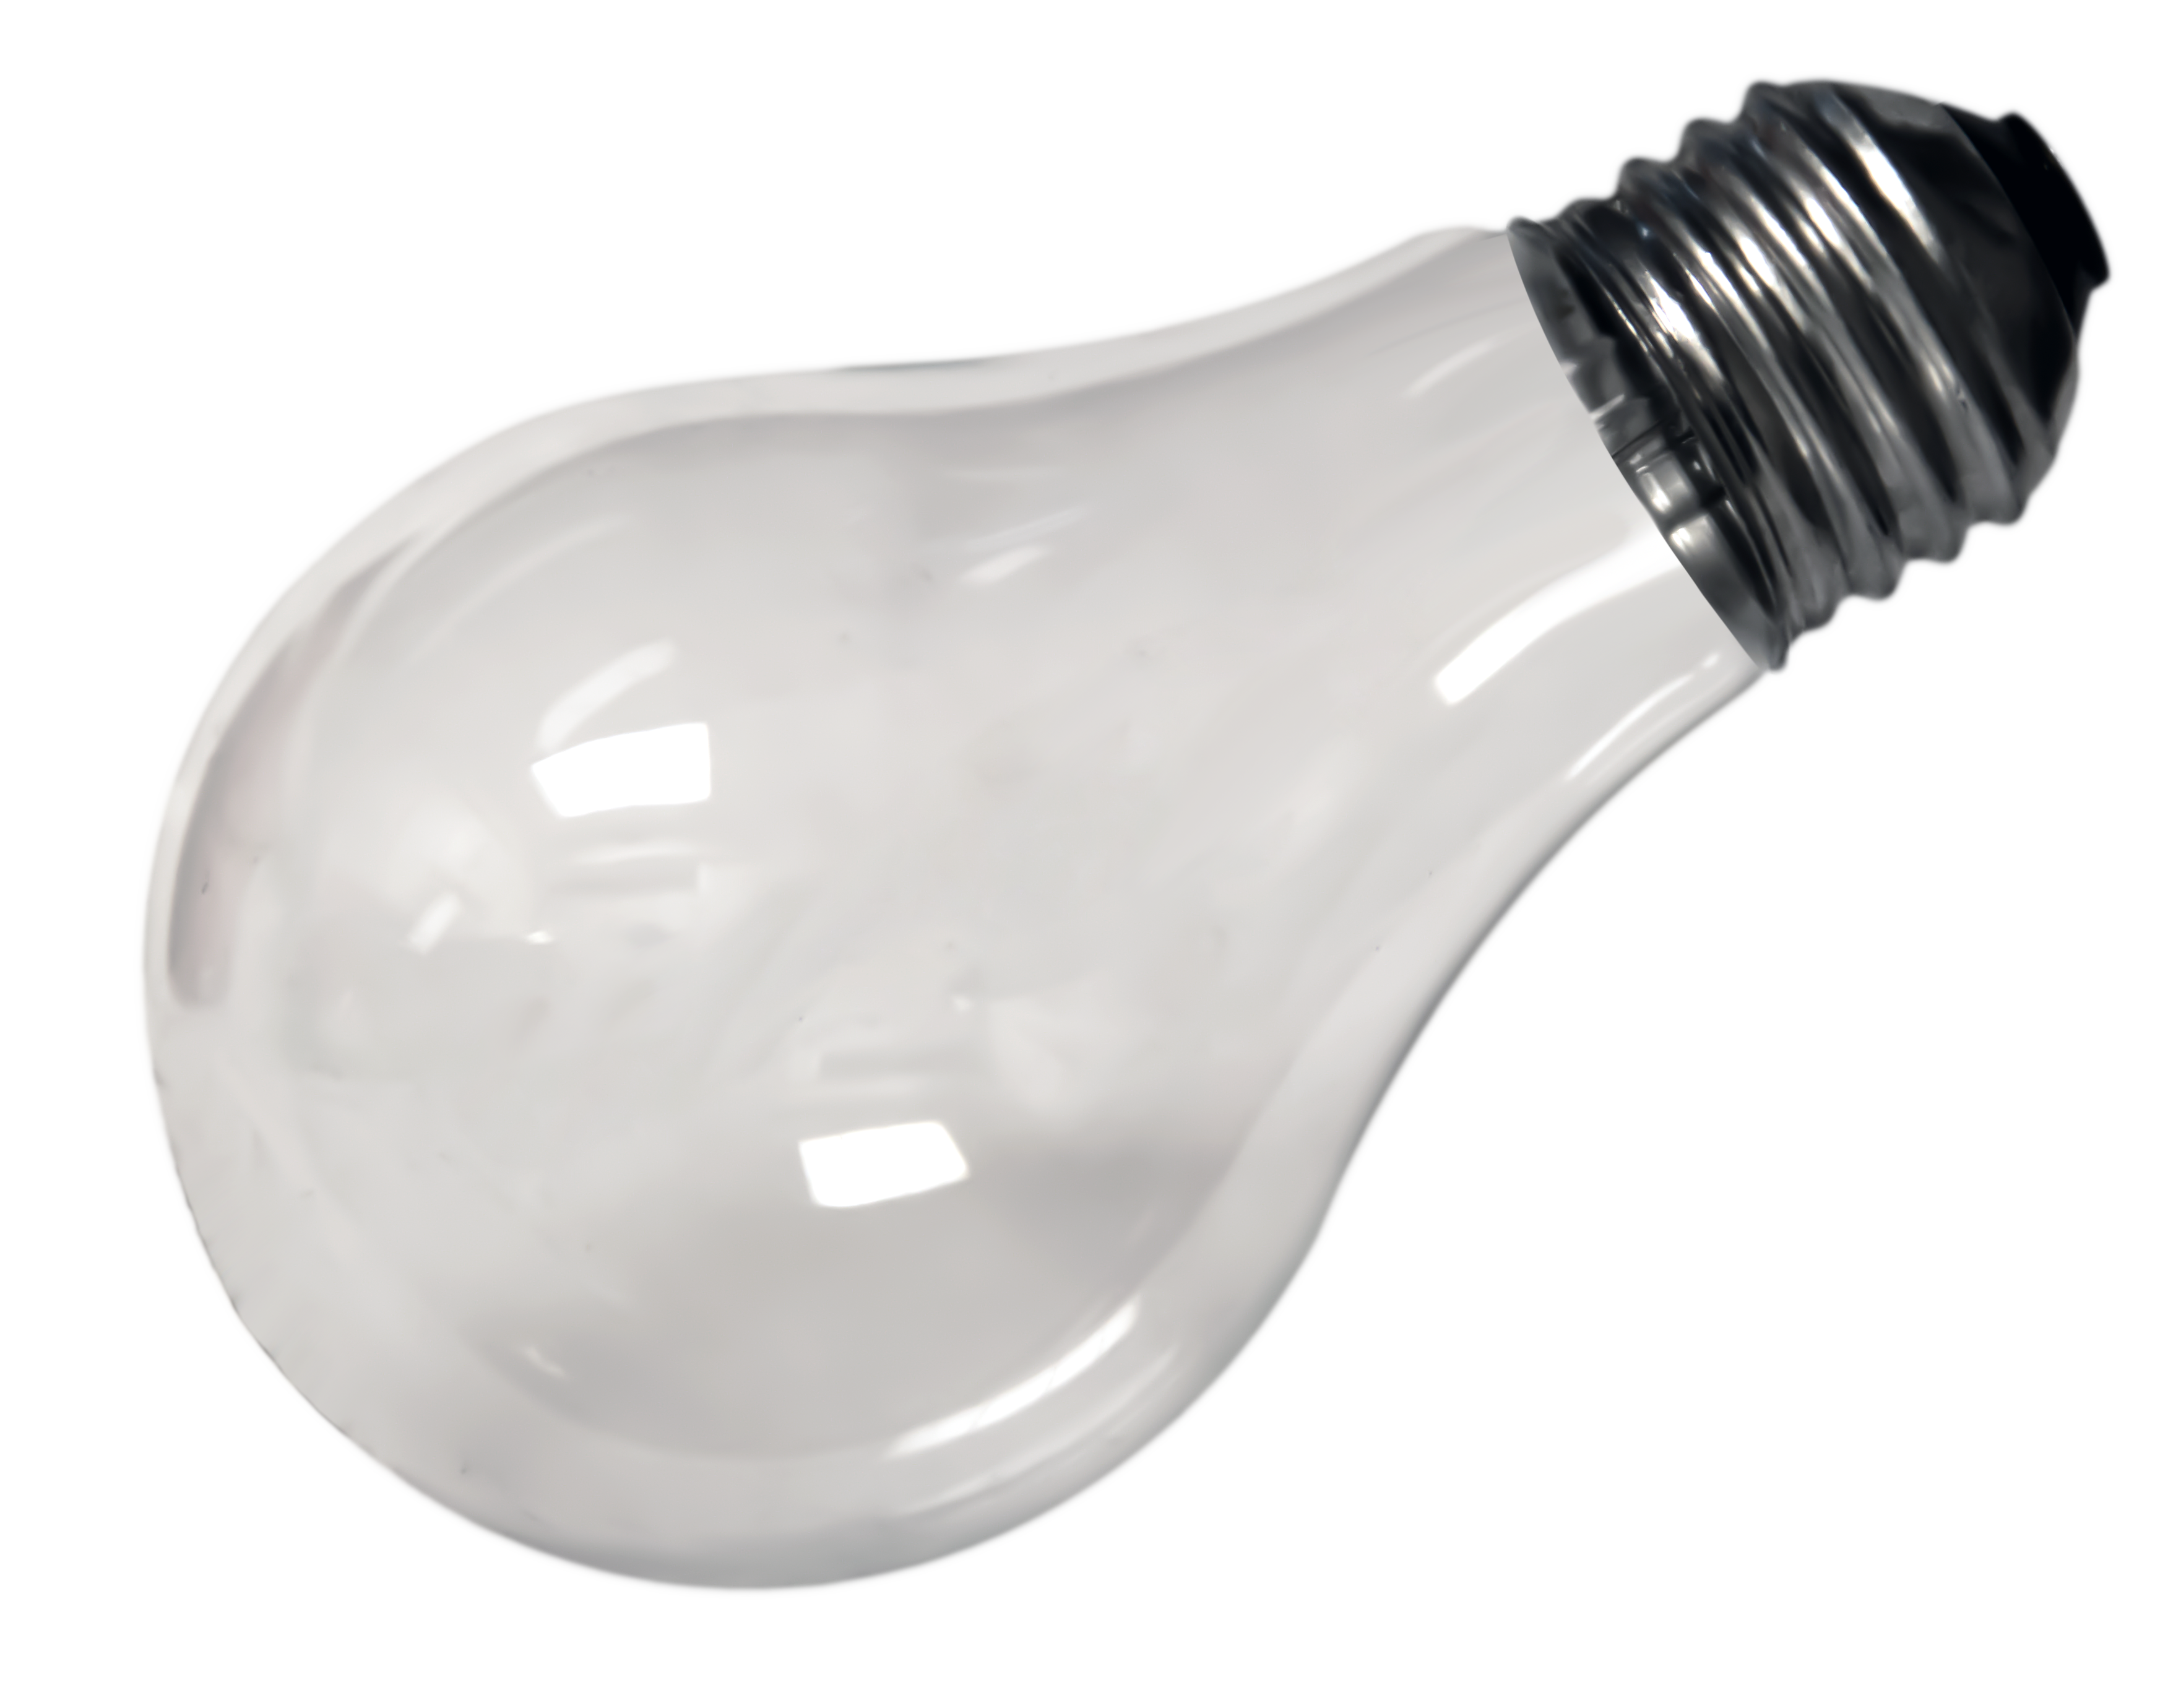 Light Bulb, Bulbs, Fragile, 7